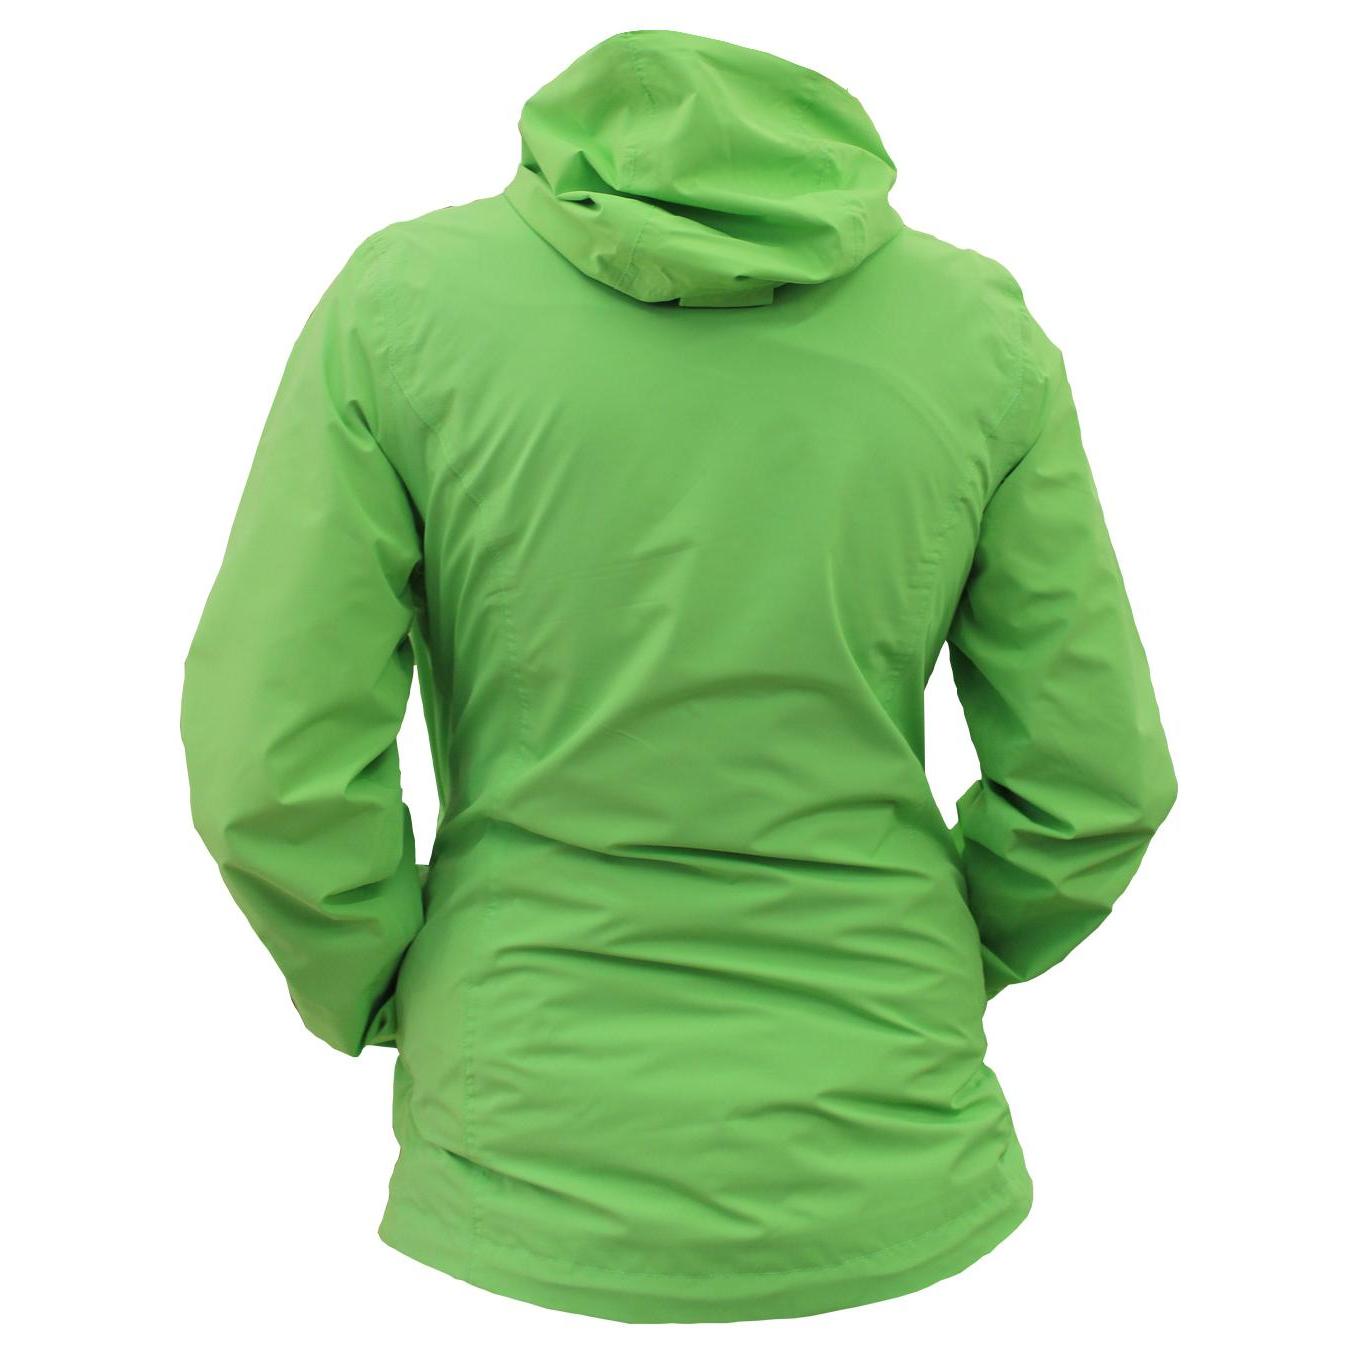 Куртка для активного отдыха Maier Sports 2016 SMU 520500 summer green